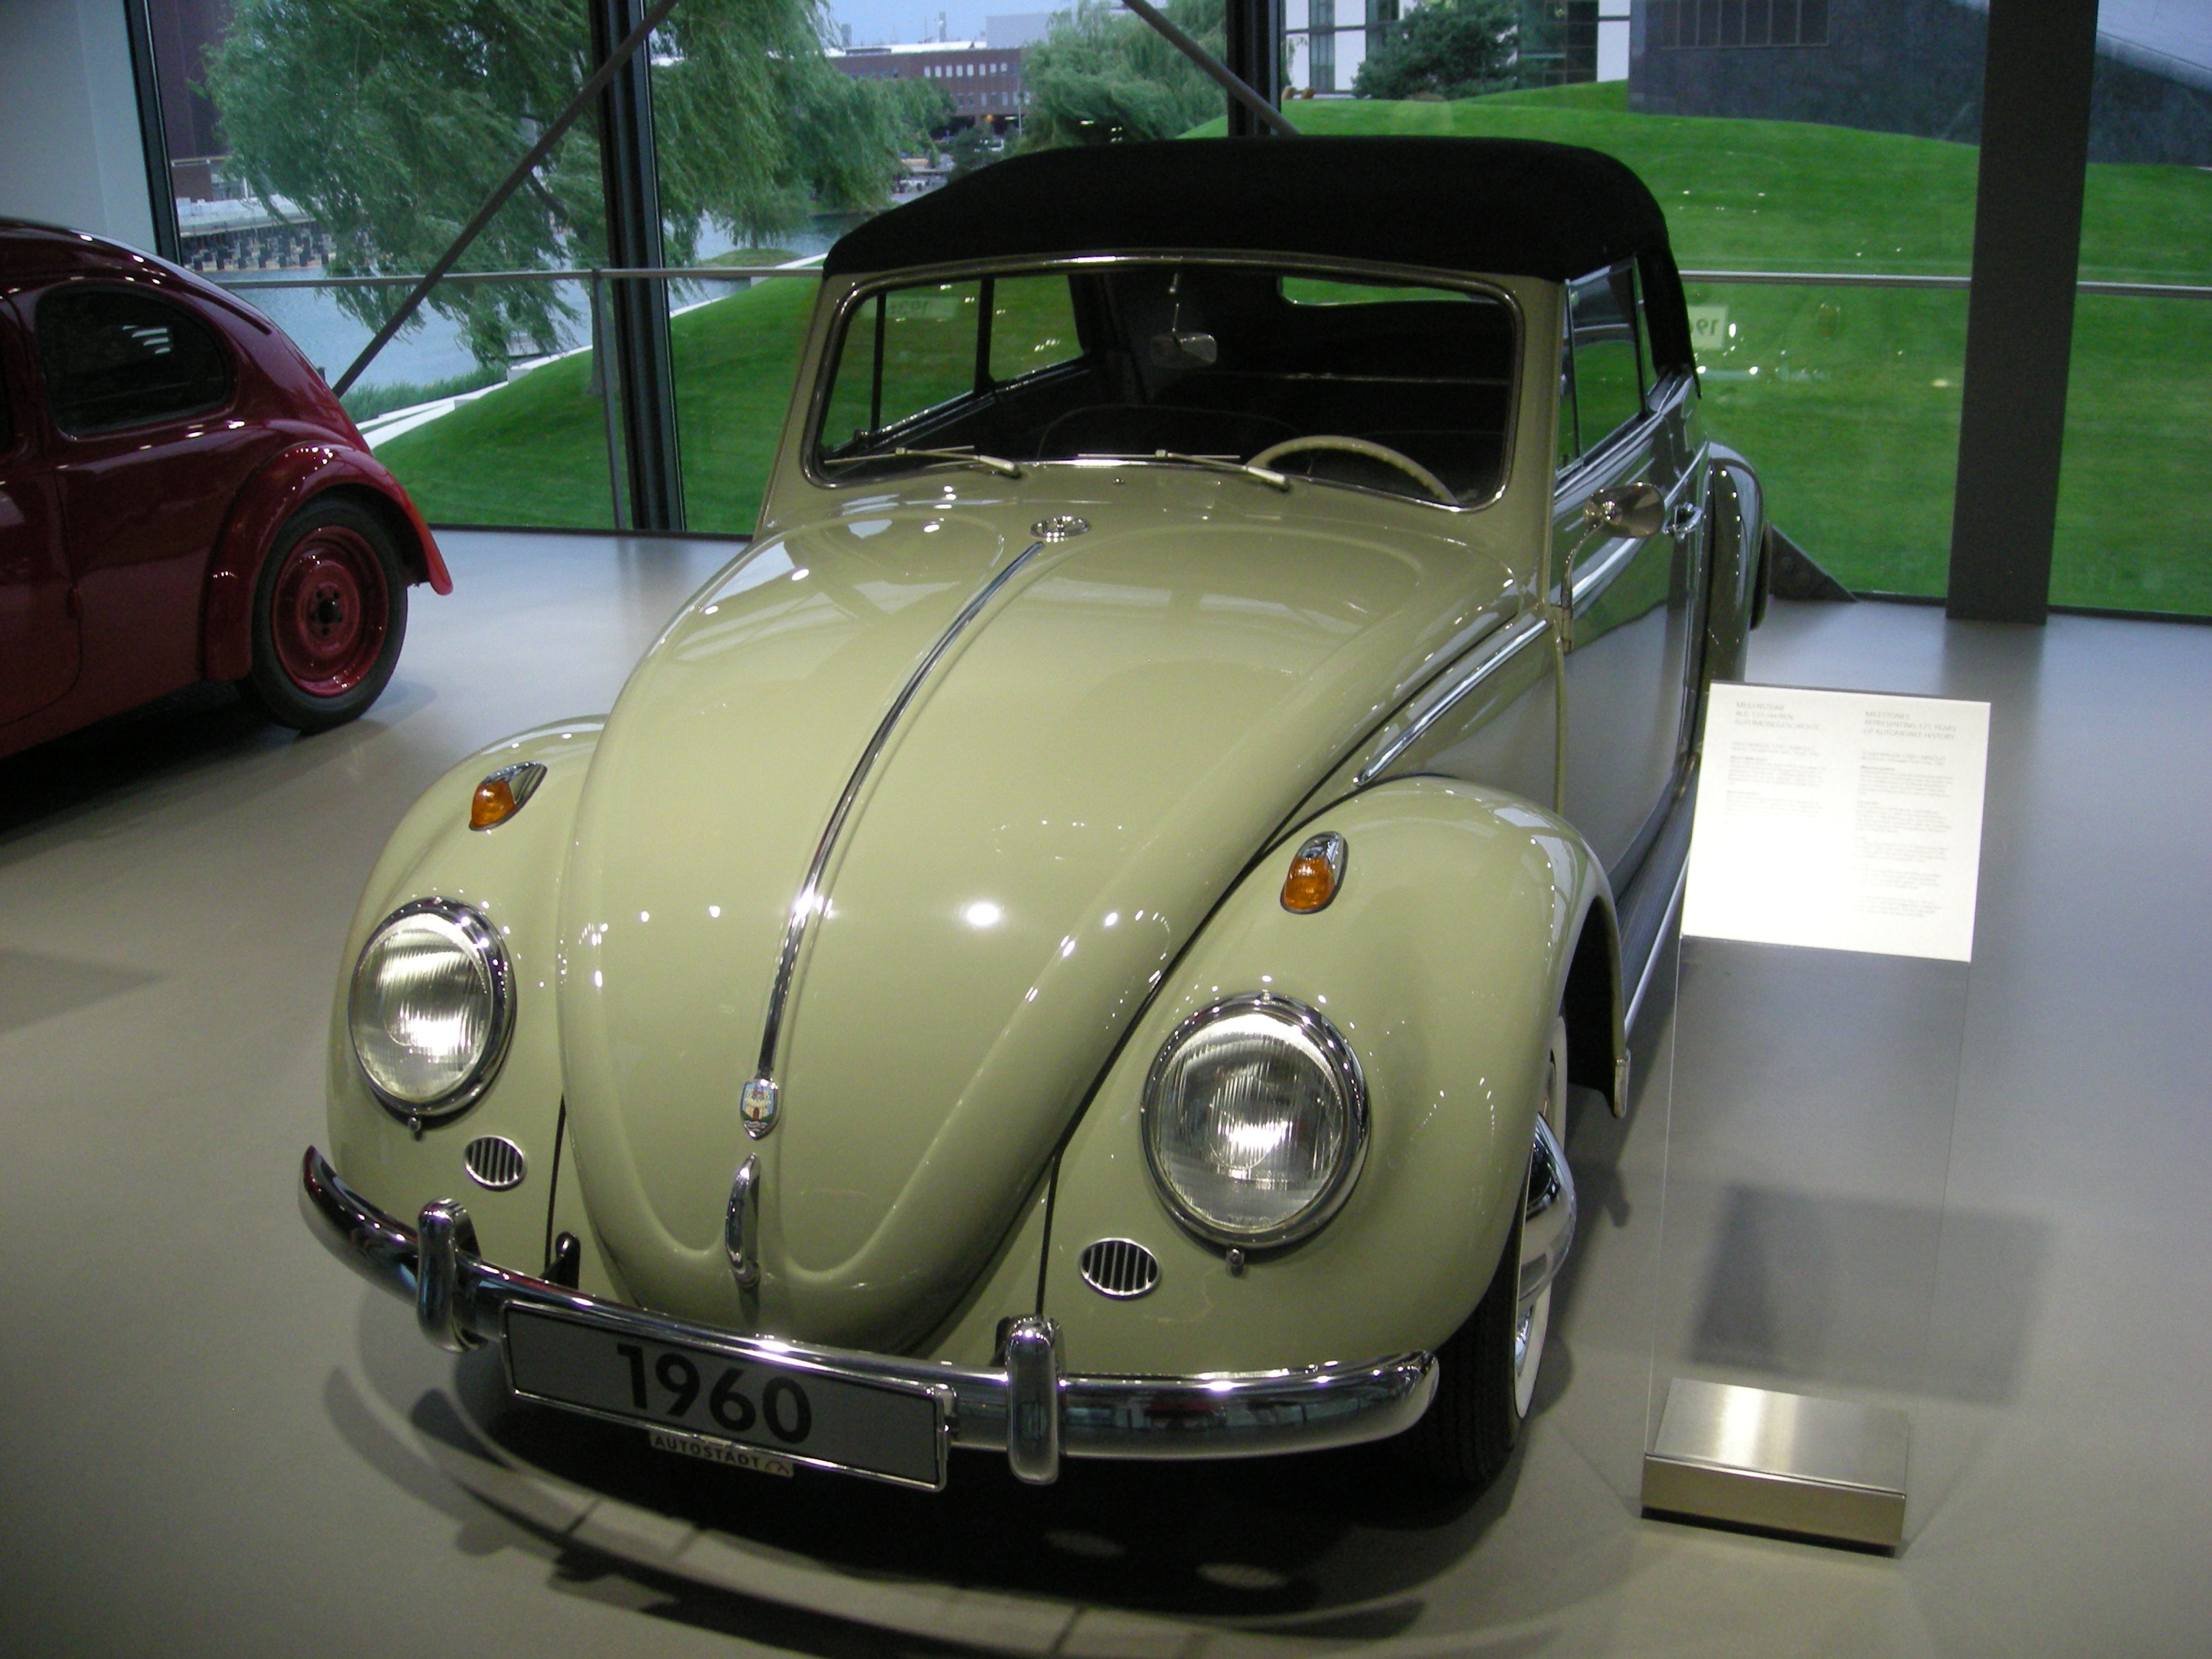 File:Wolfsburg Jun 2012 128 (Autostadt - 1960 Volkswagen 1200 Cabriolet).JPG